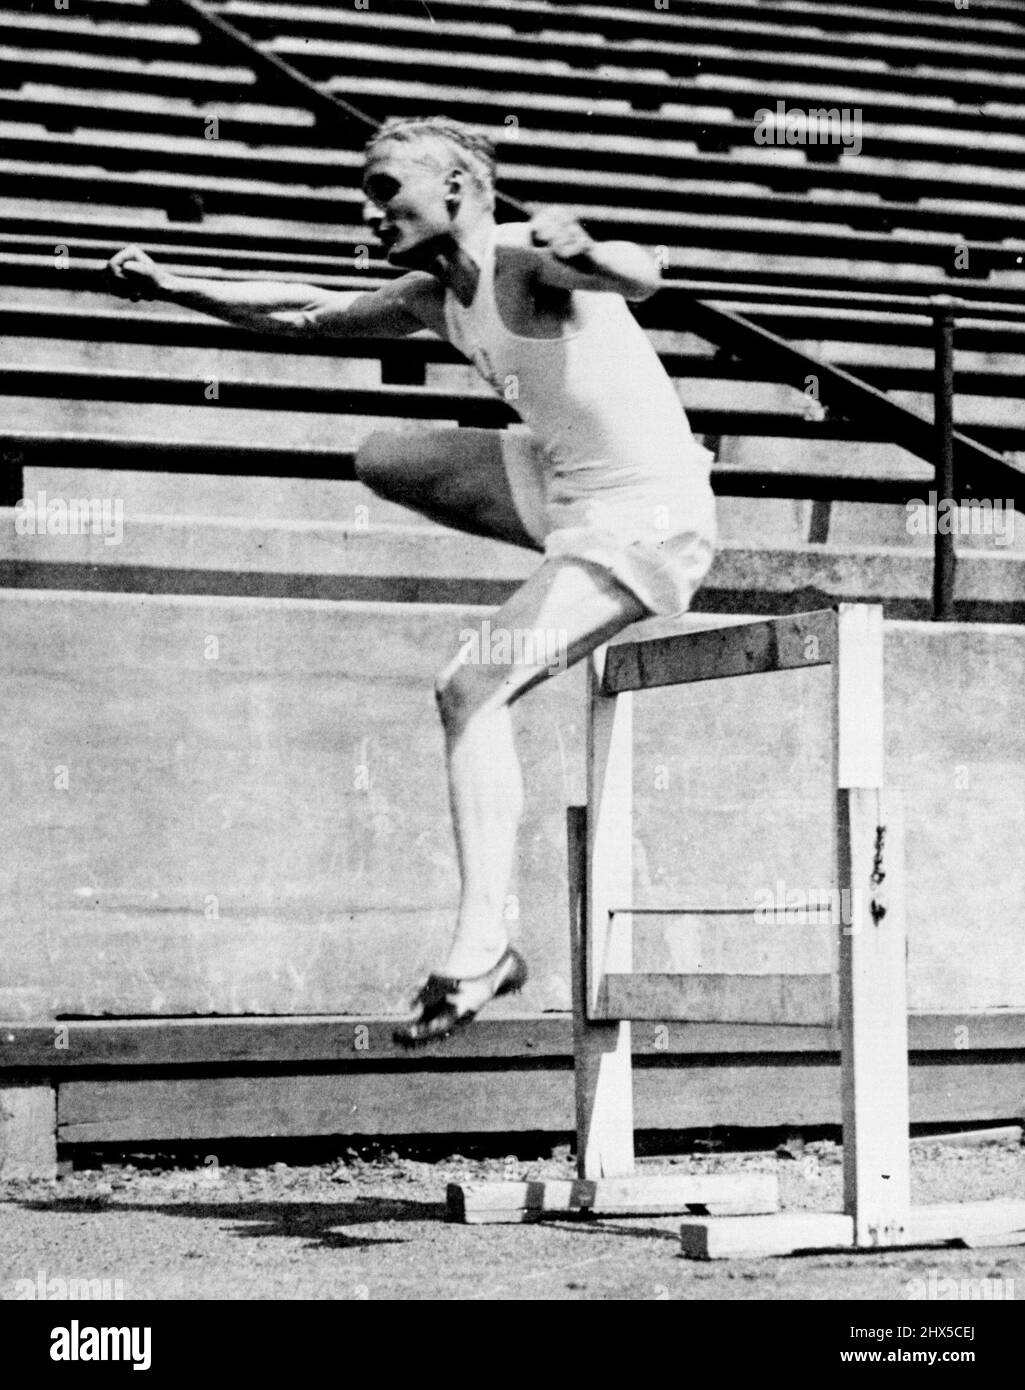 Lord Burghley arbeitet heraus -- Lord Burghley, Kapitän des britischen olympischen Zackens, fotografiert in Toronto, Ontario, Kurze Zeit nach der Ankunft des britischen olympischen Teams, als er ein kurzes Training genoss. Lord Burghley ist Olympiasieger über 400 Meter Hürde und wird bald mit dem Team nach Los Angeles gehen. 20. Juli 1932. (Foto von Associated Press). Stockfoto